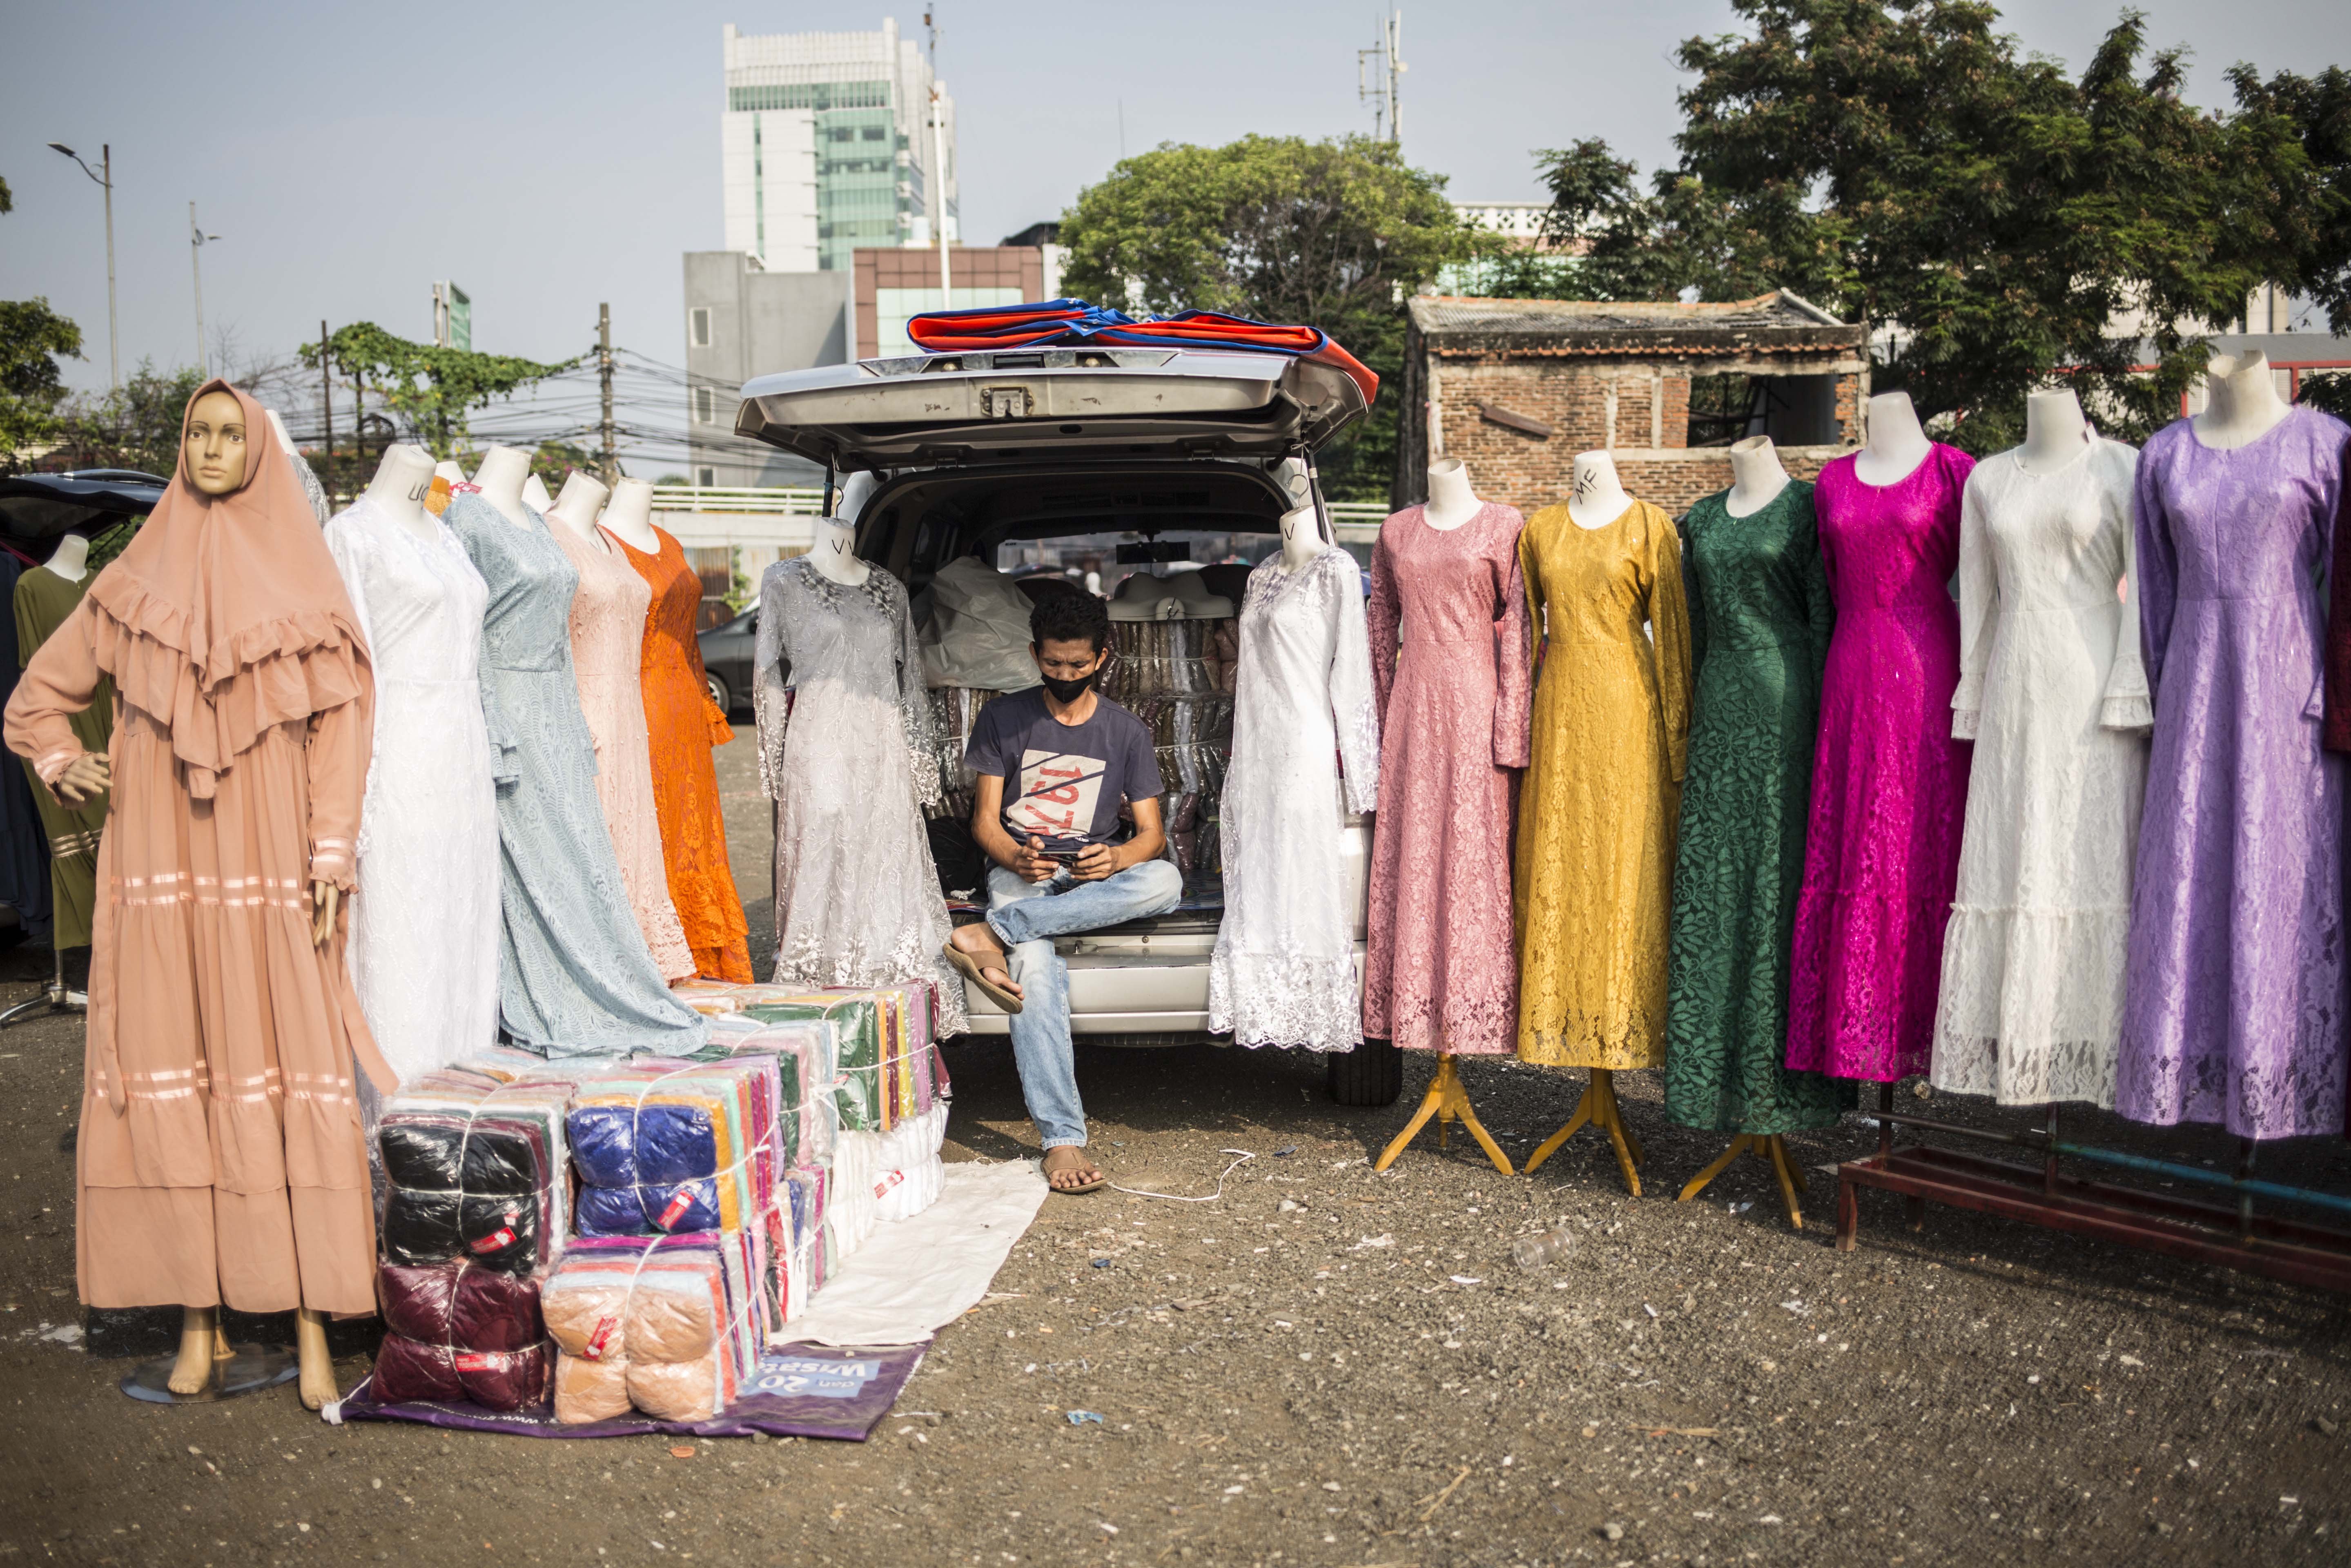 Pedagang menunggu pembeli di Pasar Tasik, Cideng, Jakarta, Kamis (11/6/2020). Sempat ditutup sejak April lalu, kini Pasar Tasik kembali buka pada masa transisi Pembasatan Sosial Bersekala Besar (PSBB) dengan menerapkan protokol kesehatan serta pembatasan jumlah pengunjung.